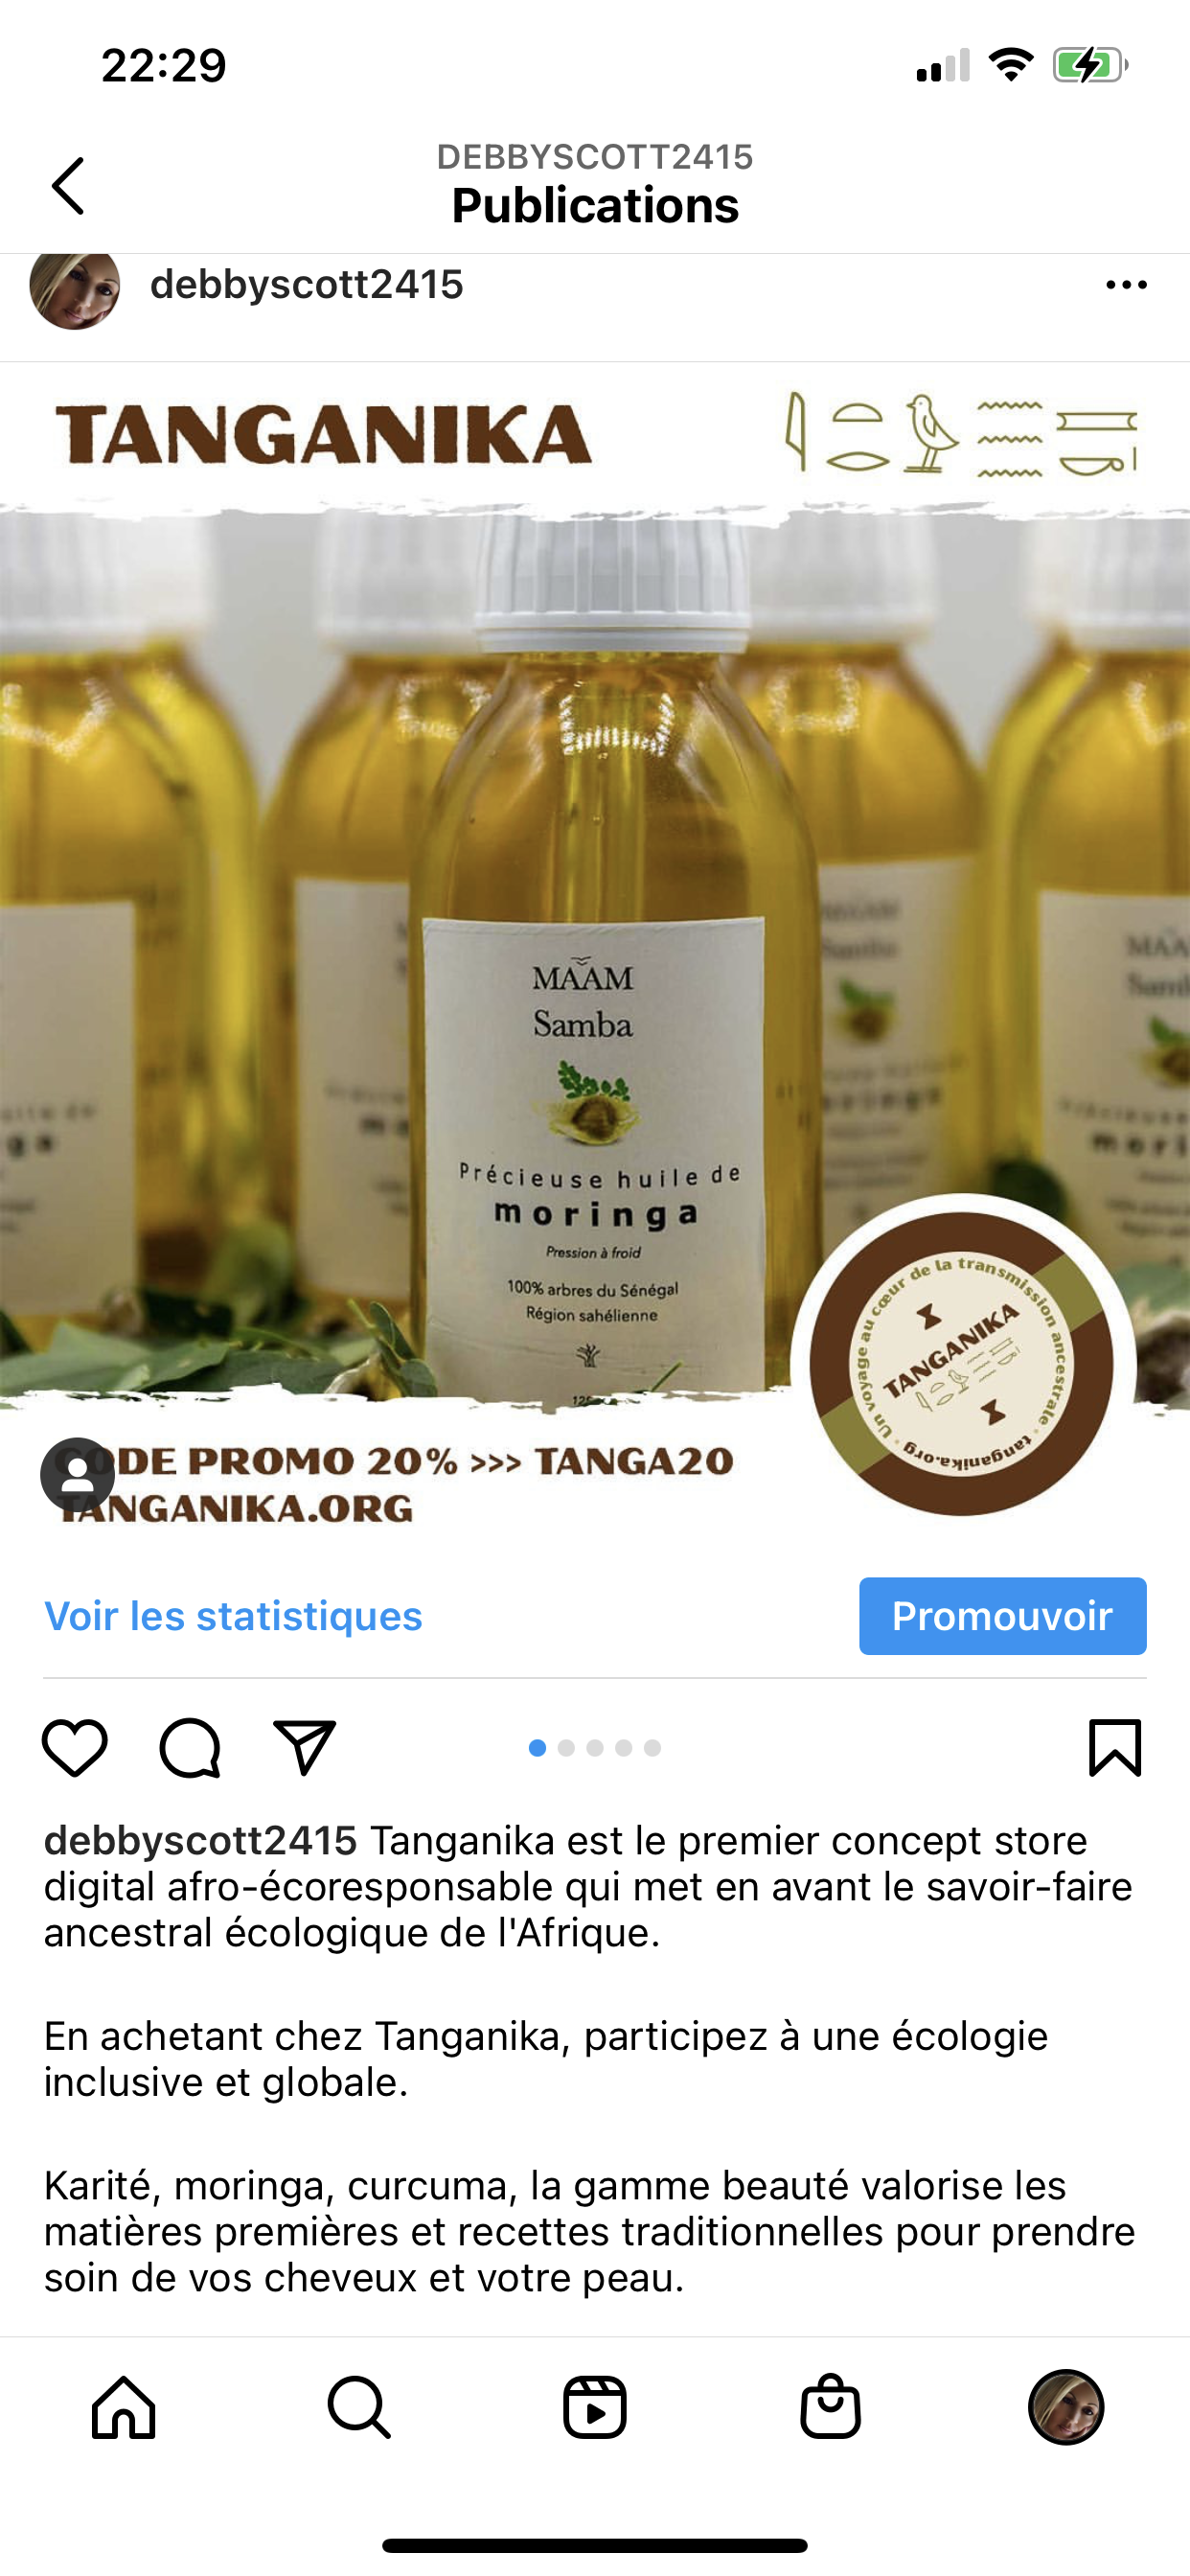 Promotion de la marque Tanganika beauté